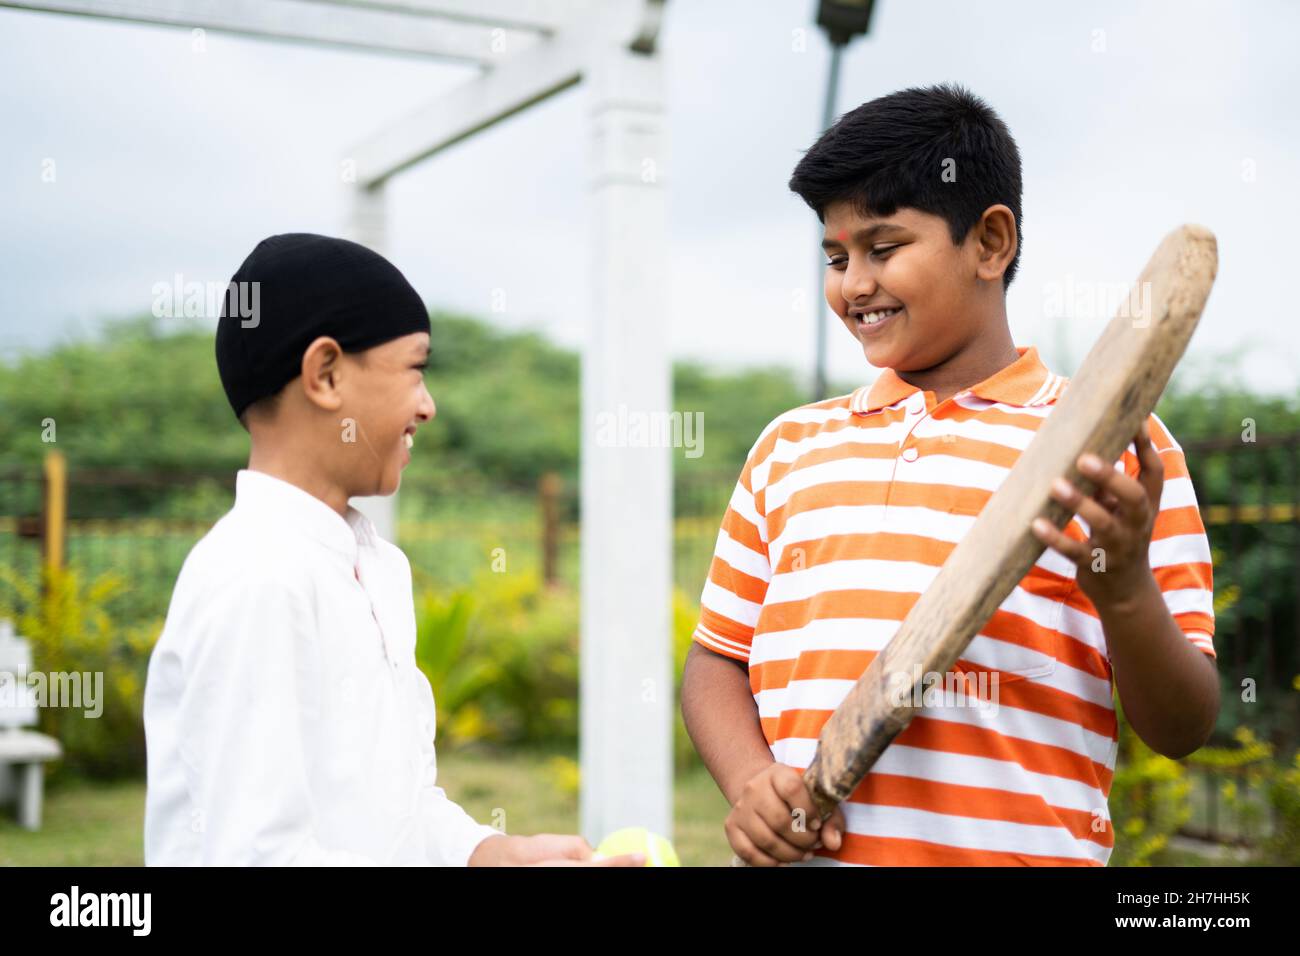 Glückliche indische multiethnische Kinder mit Schläger und Ball gehen Cricket spielen - Konzept der Freundschaft, Outdoor-Aktivitäten und kommunale Harmonie. Stockfoto